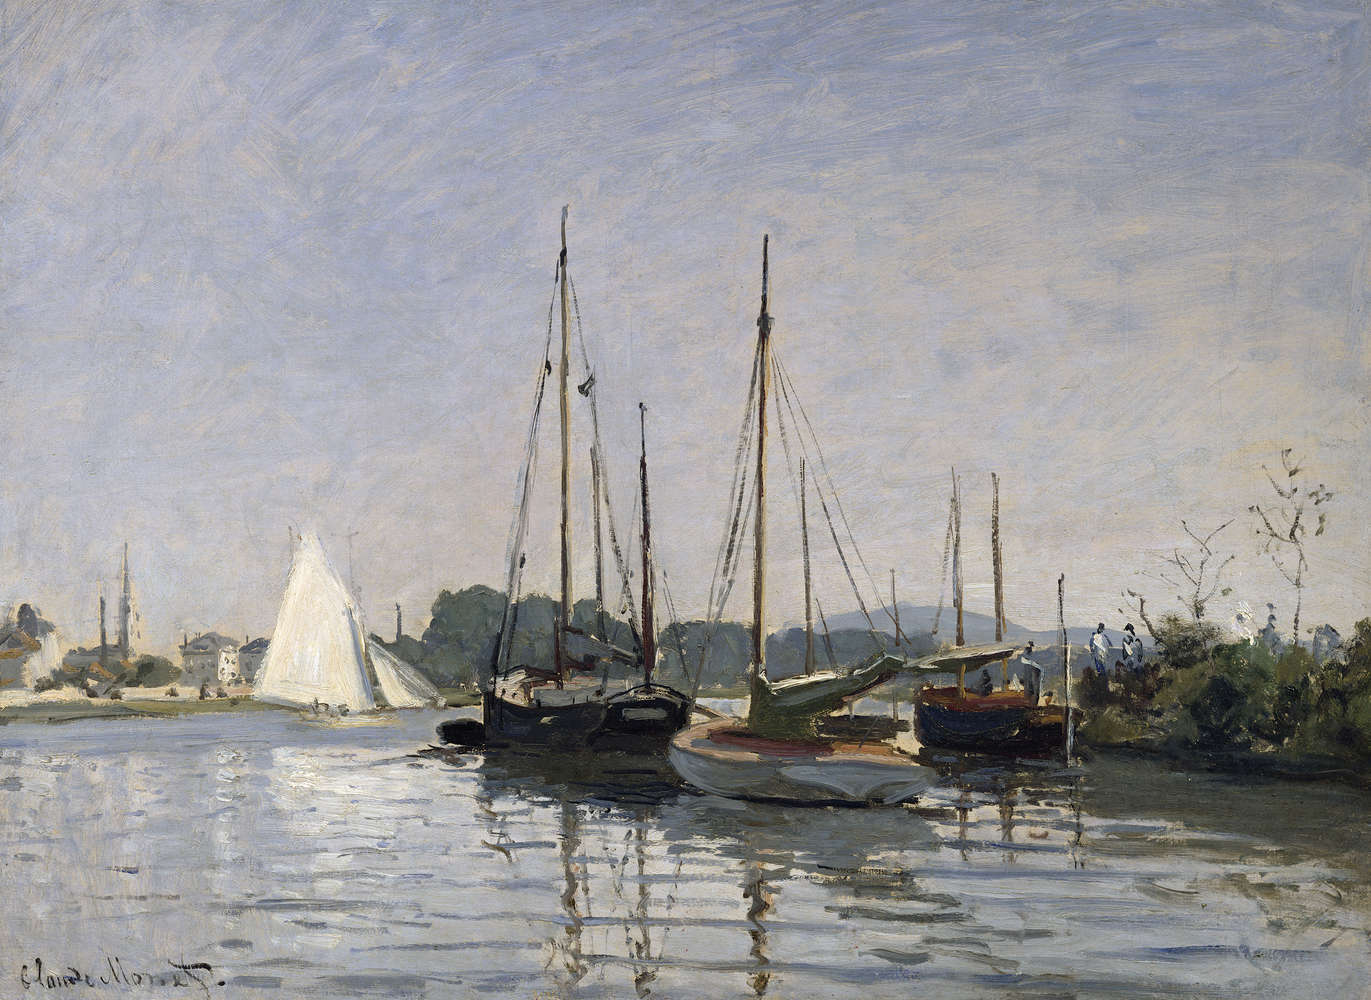             Fototapete "Vergnügungsboote, Argenteuil" von Claude Monet
        